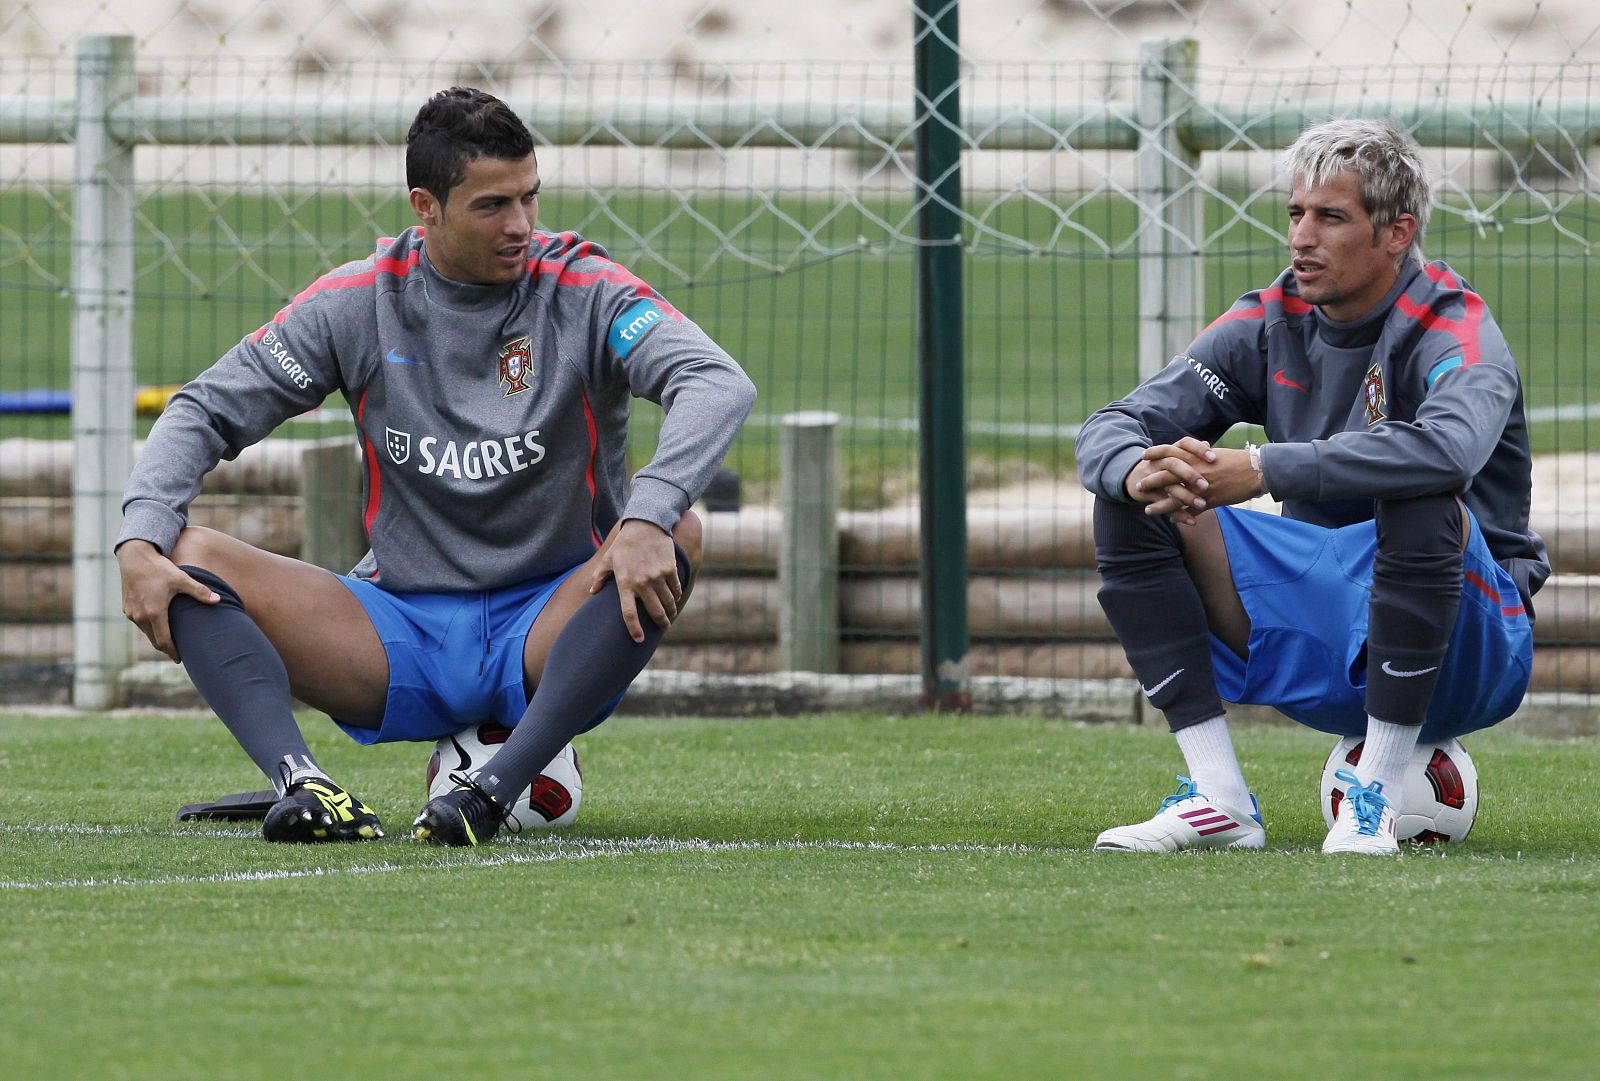 El lateral izquierdo Fábio Coentrao habla con Cristiano Ronaldo durante un entrenamiento de la selección nacional portuguesa.